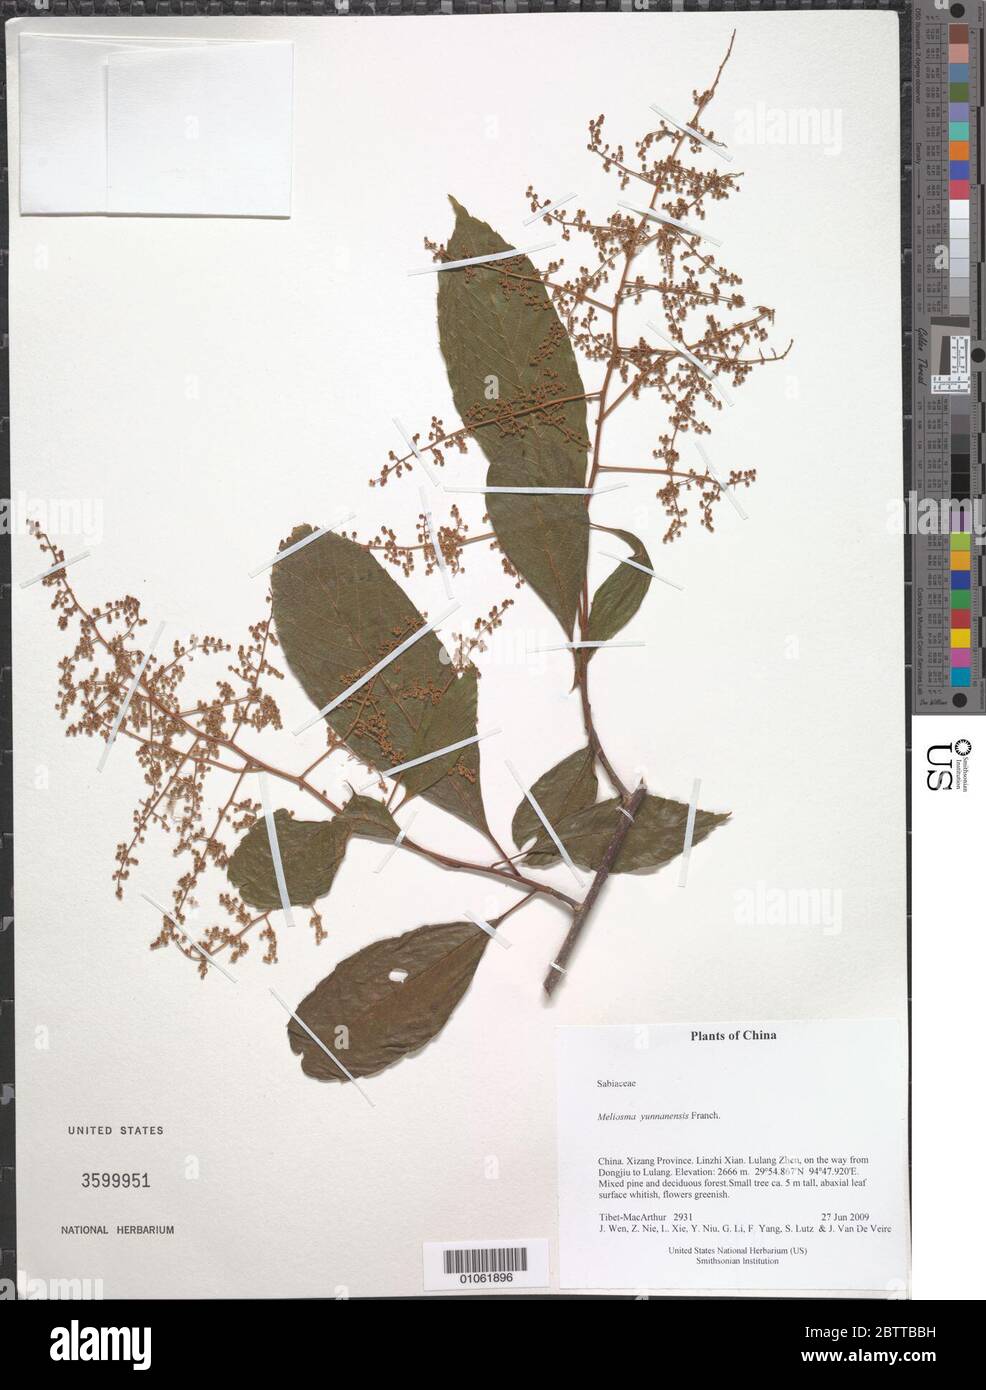 Meliosma yunnanensis Franch. Stock Photo